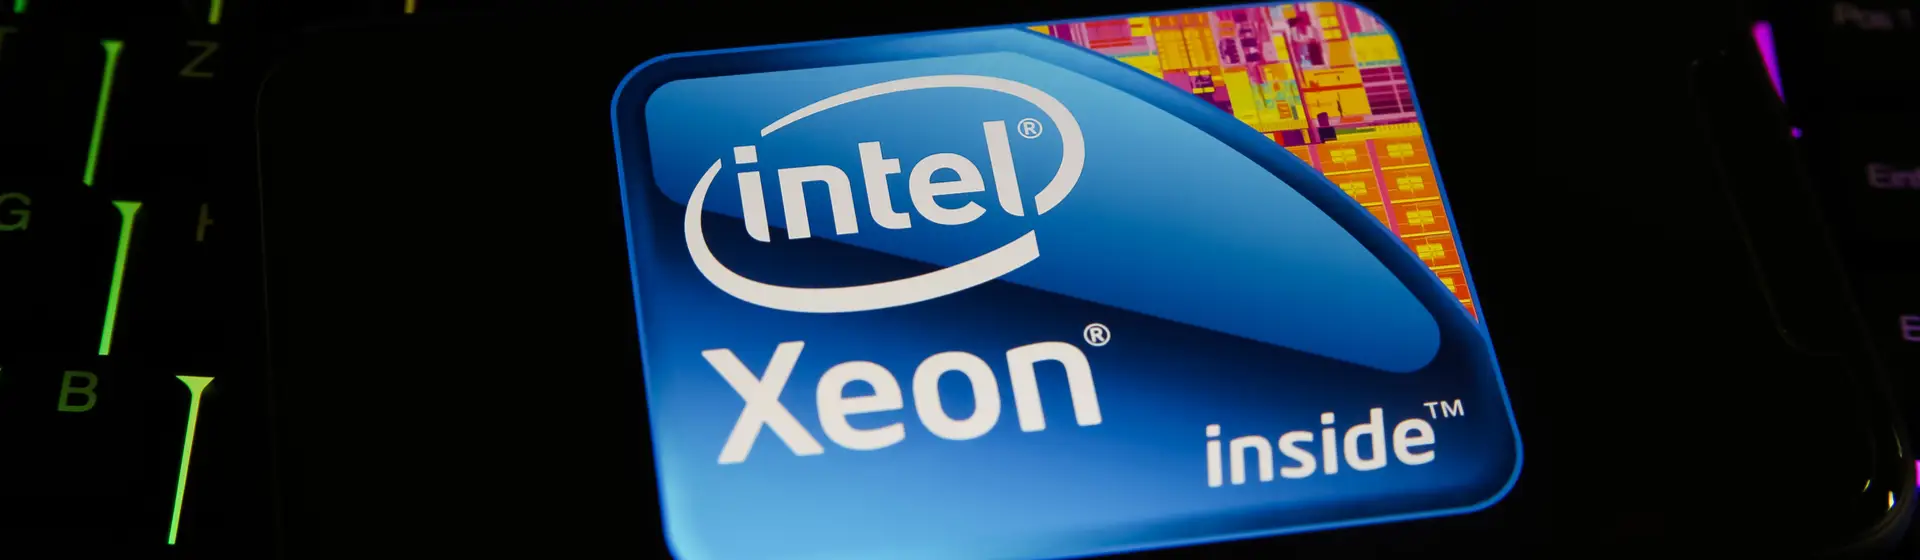 Intel Xeon: o que é? É bom? Conheça a linha avançada de processadores